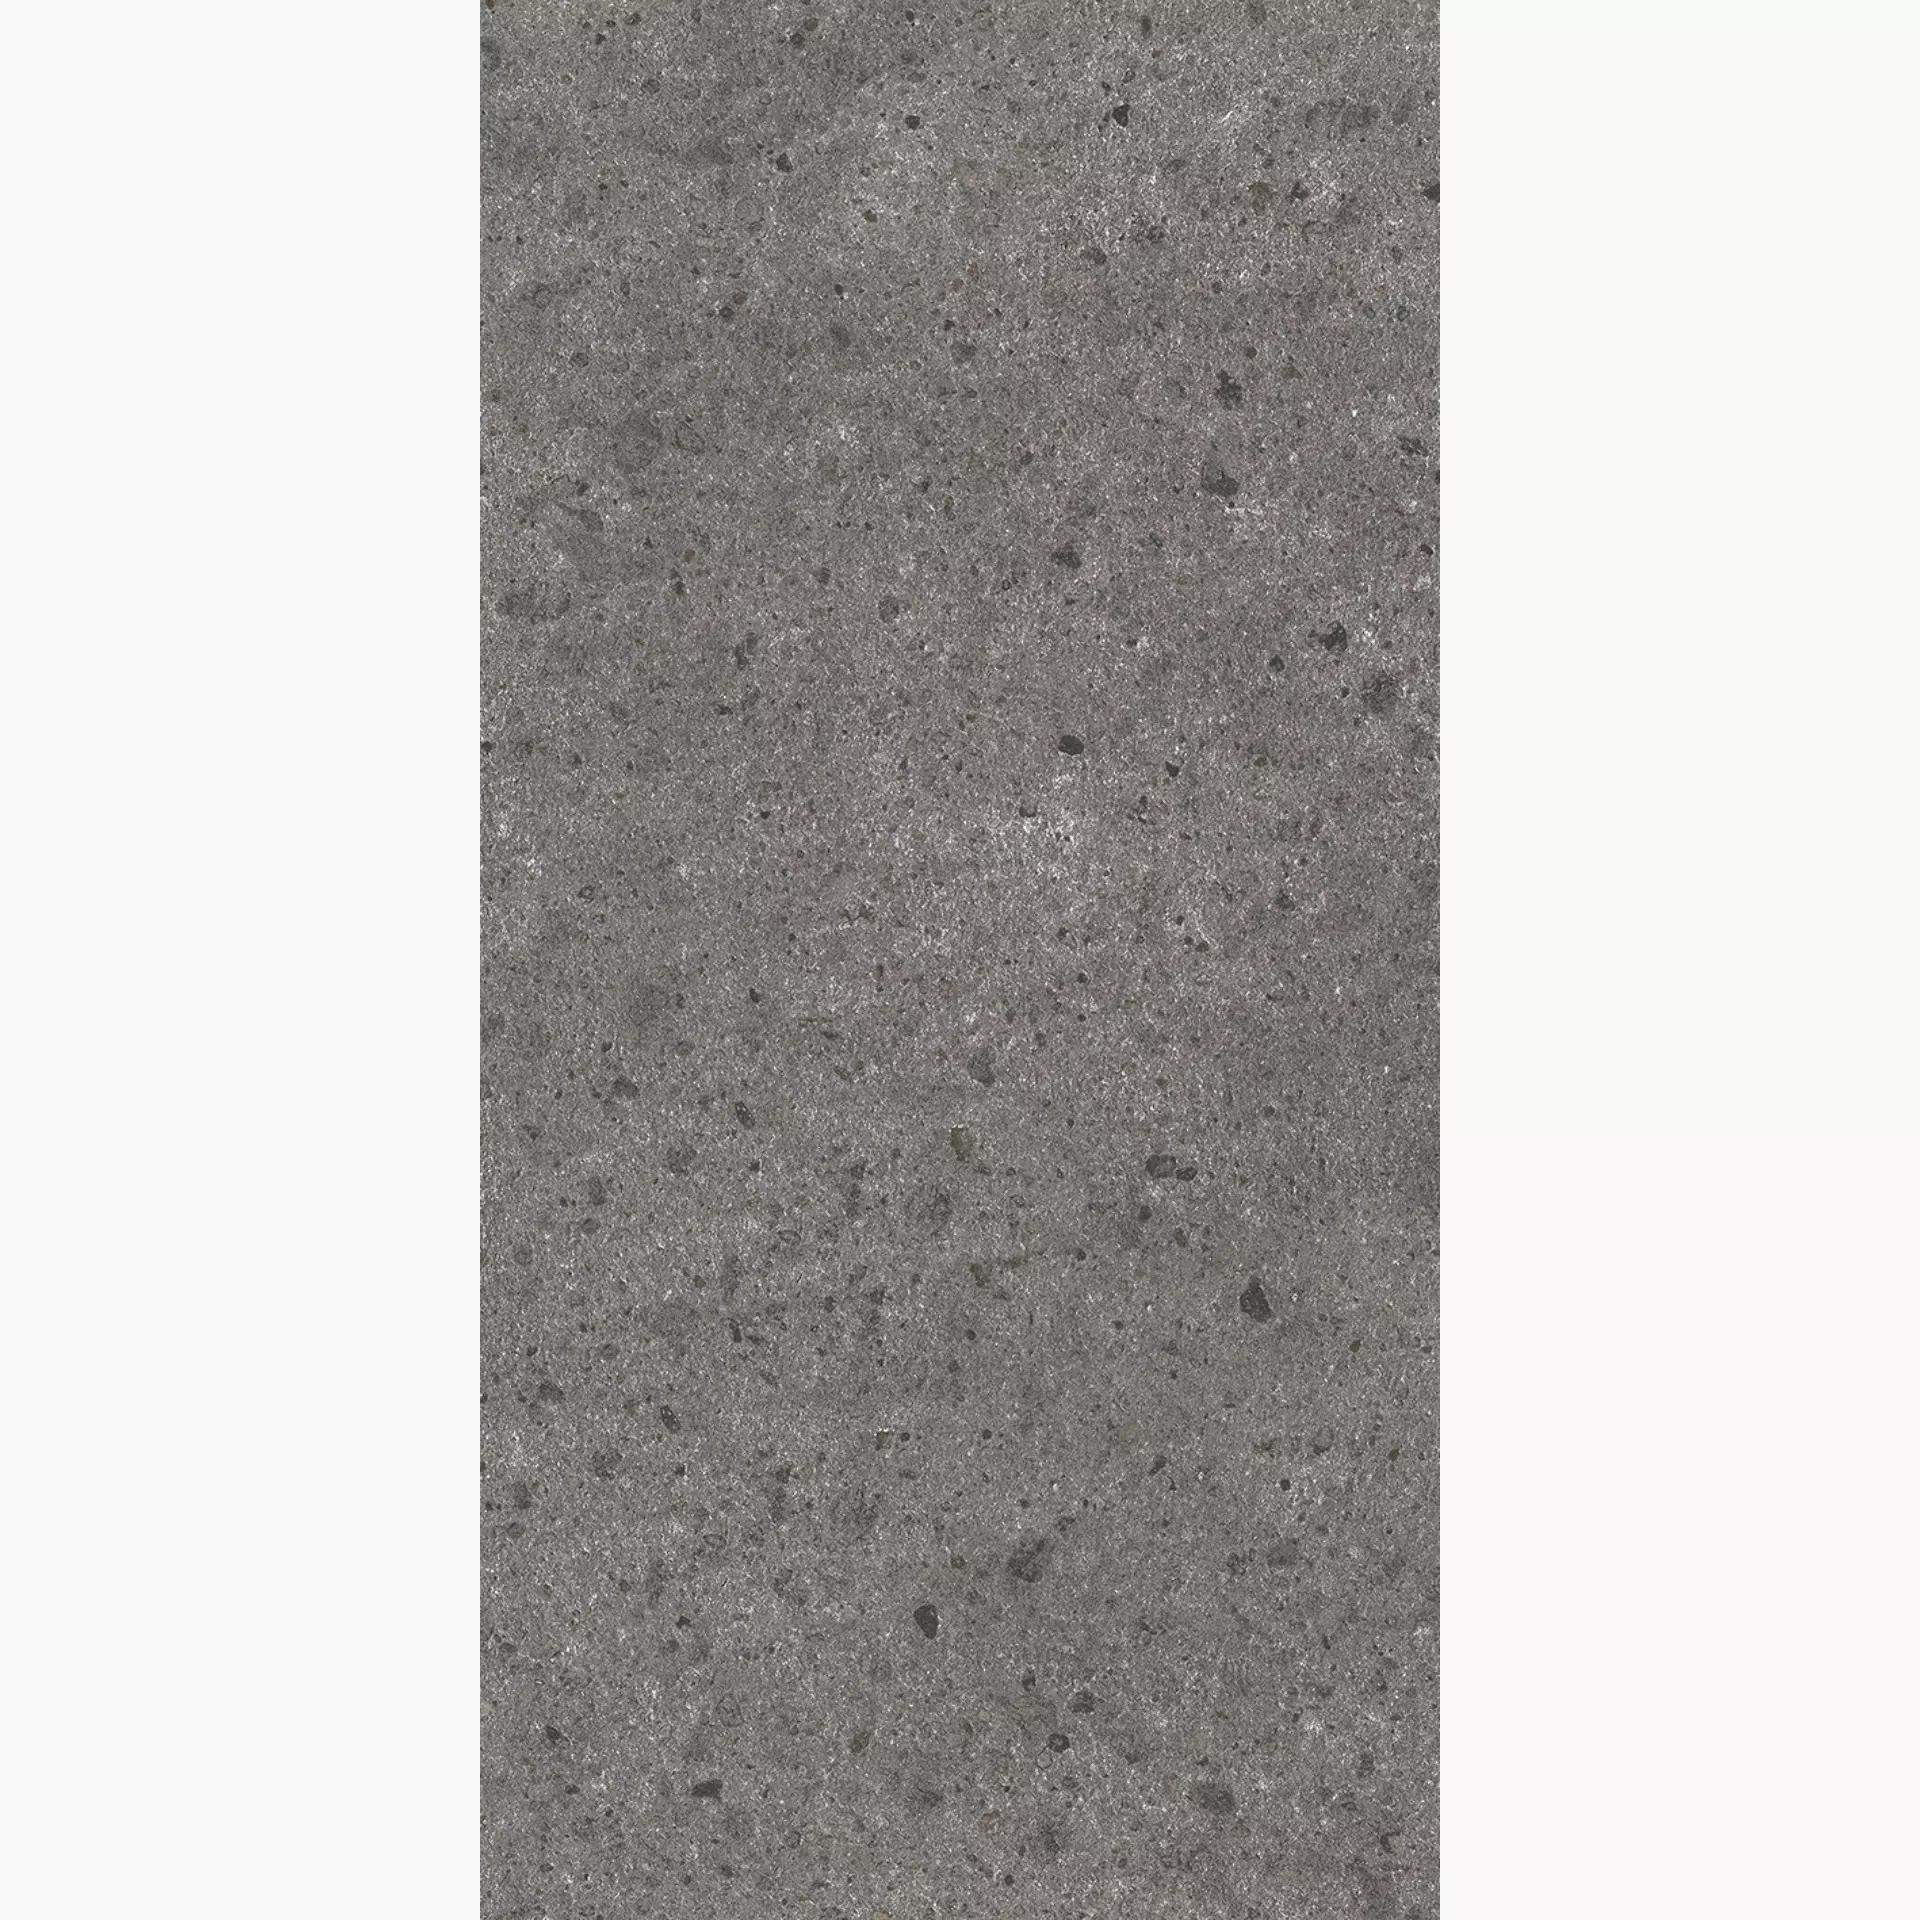 Wandfliese,Bodenfliese Villeroy & Boch Aberdeen Slate Grey Matt Slate Grey 2987-SB90 matt 60x120cm rektifiziert 10mm